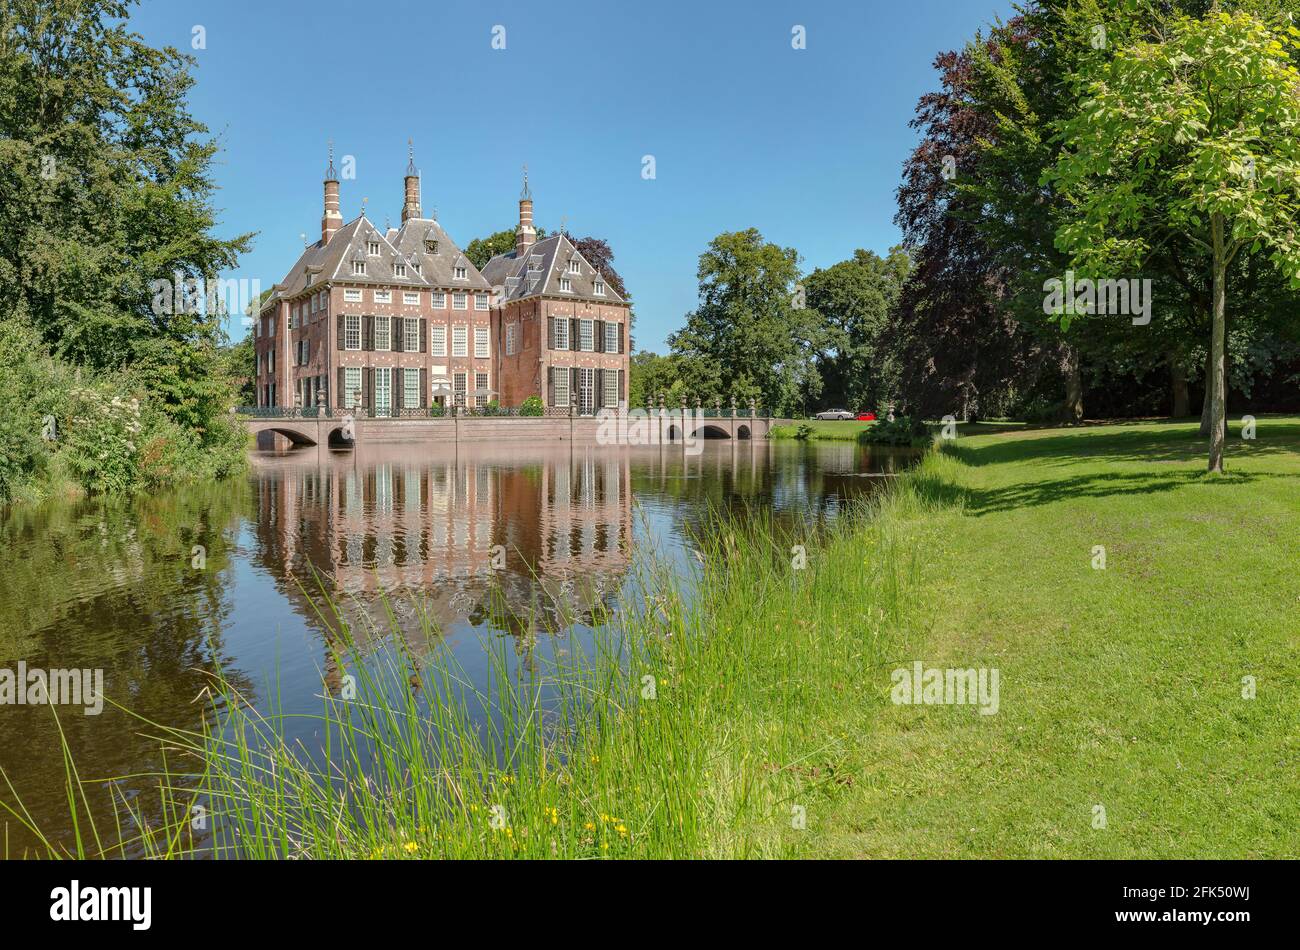 Duivenvoorde castle *** Local Caption ***  Voorschoten,   Zuid-Holland, Netherlands, castle, water, trees, summer, park, Stock Photo